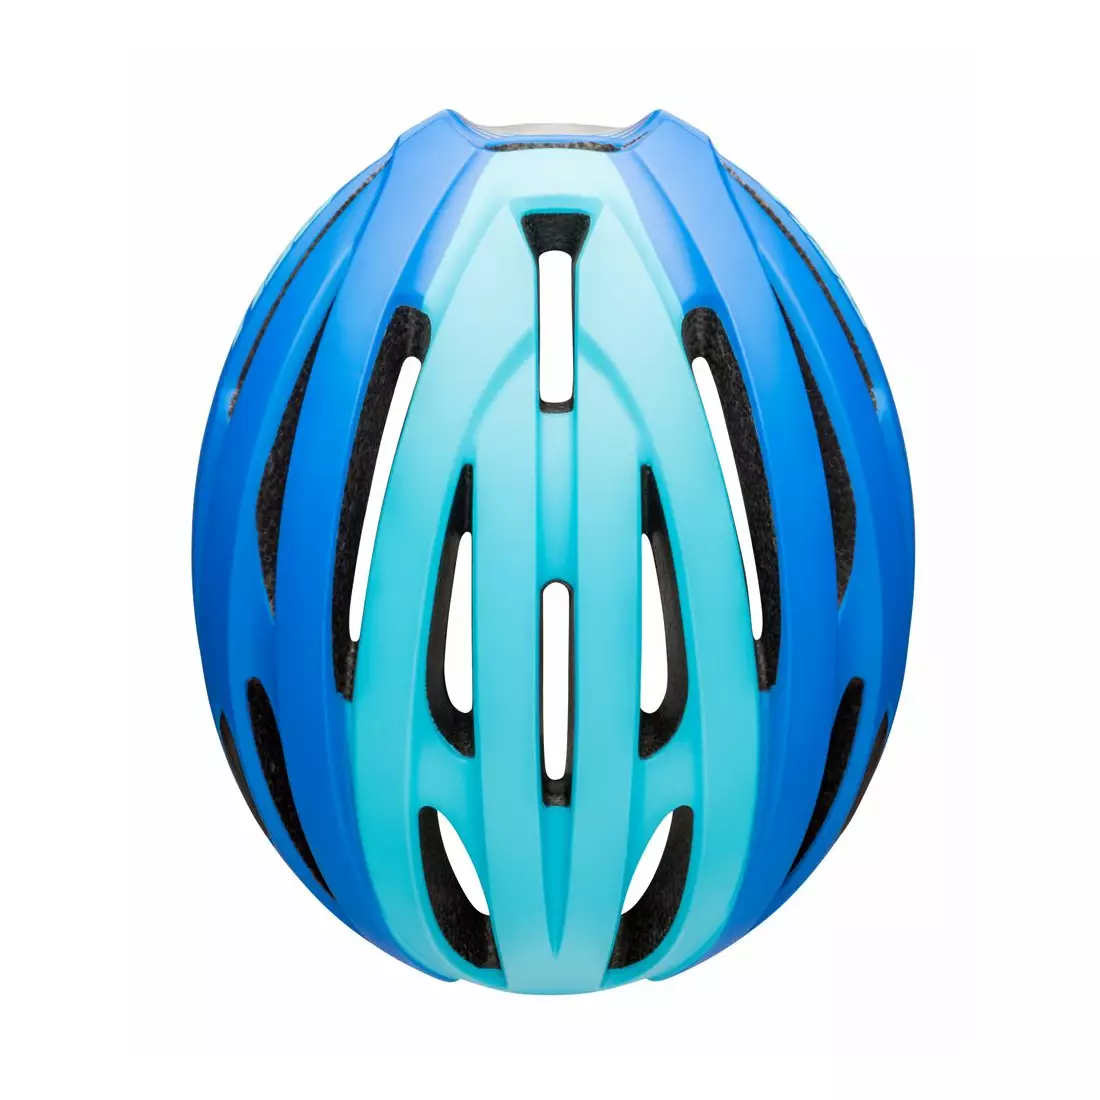 BELL AVENUE INTEGRATED MIPS casca pentru bicicleta de drum, albastru mat